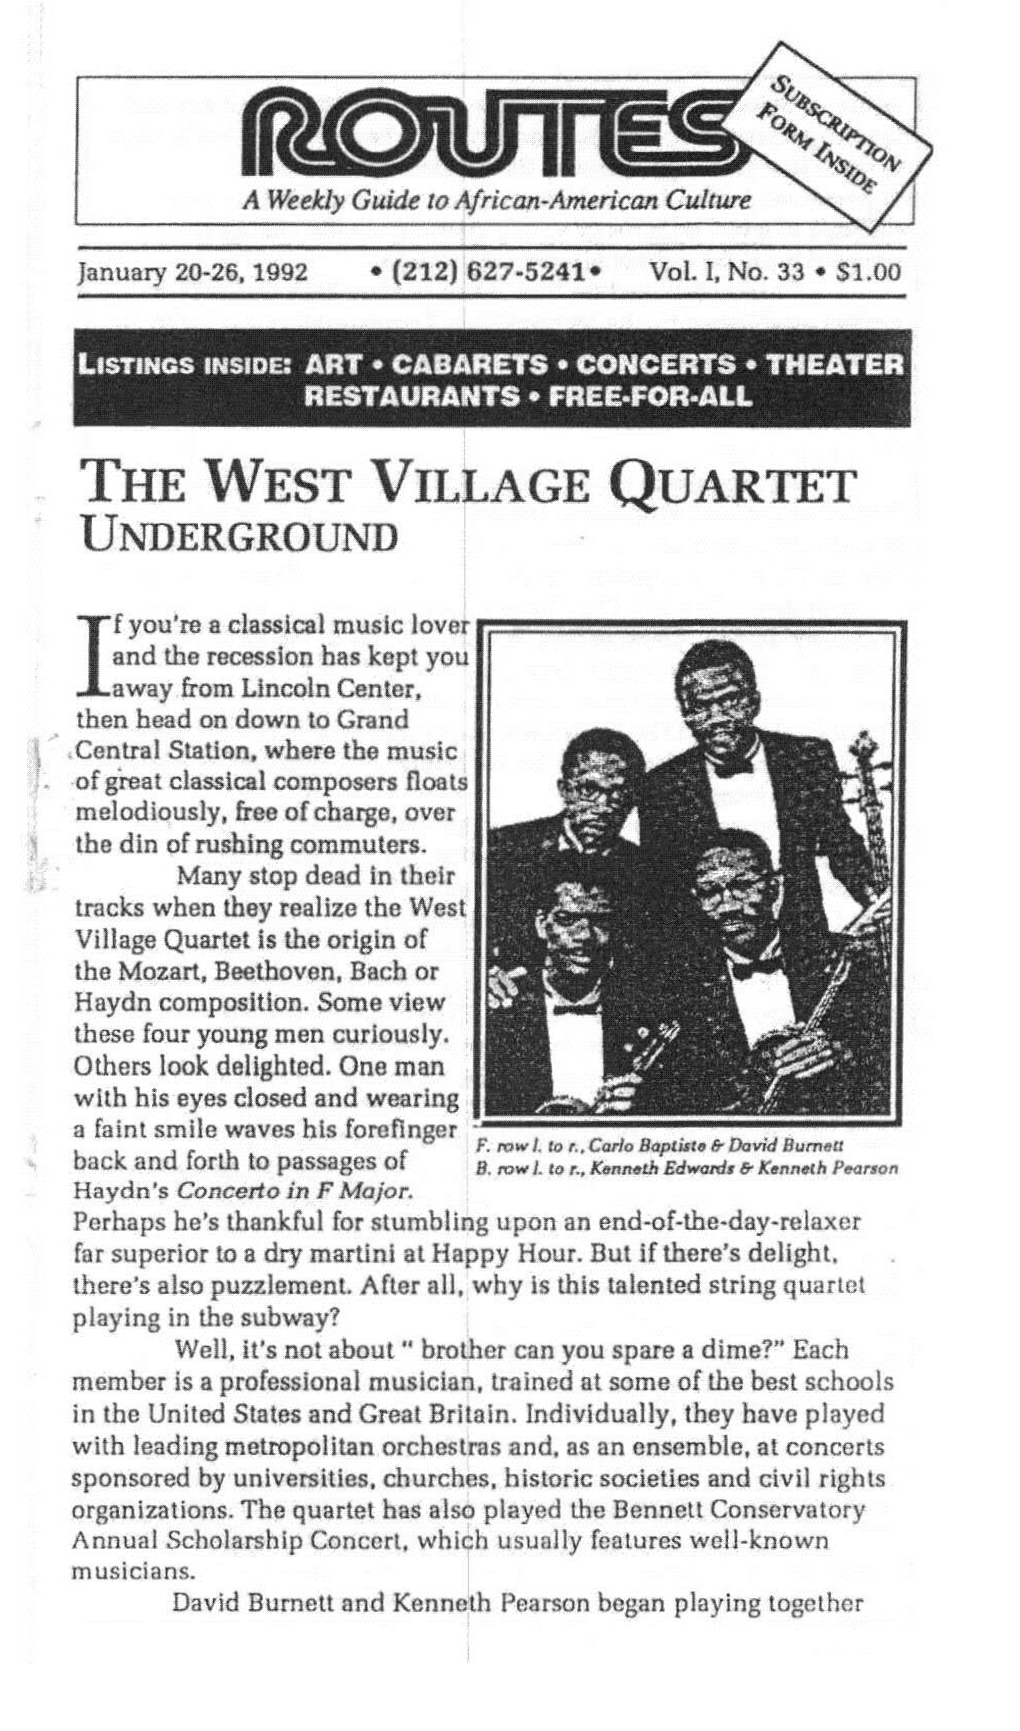 The West Village Quartet Underground